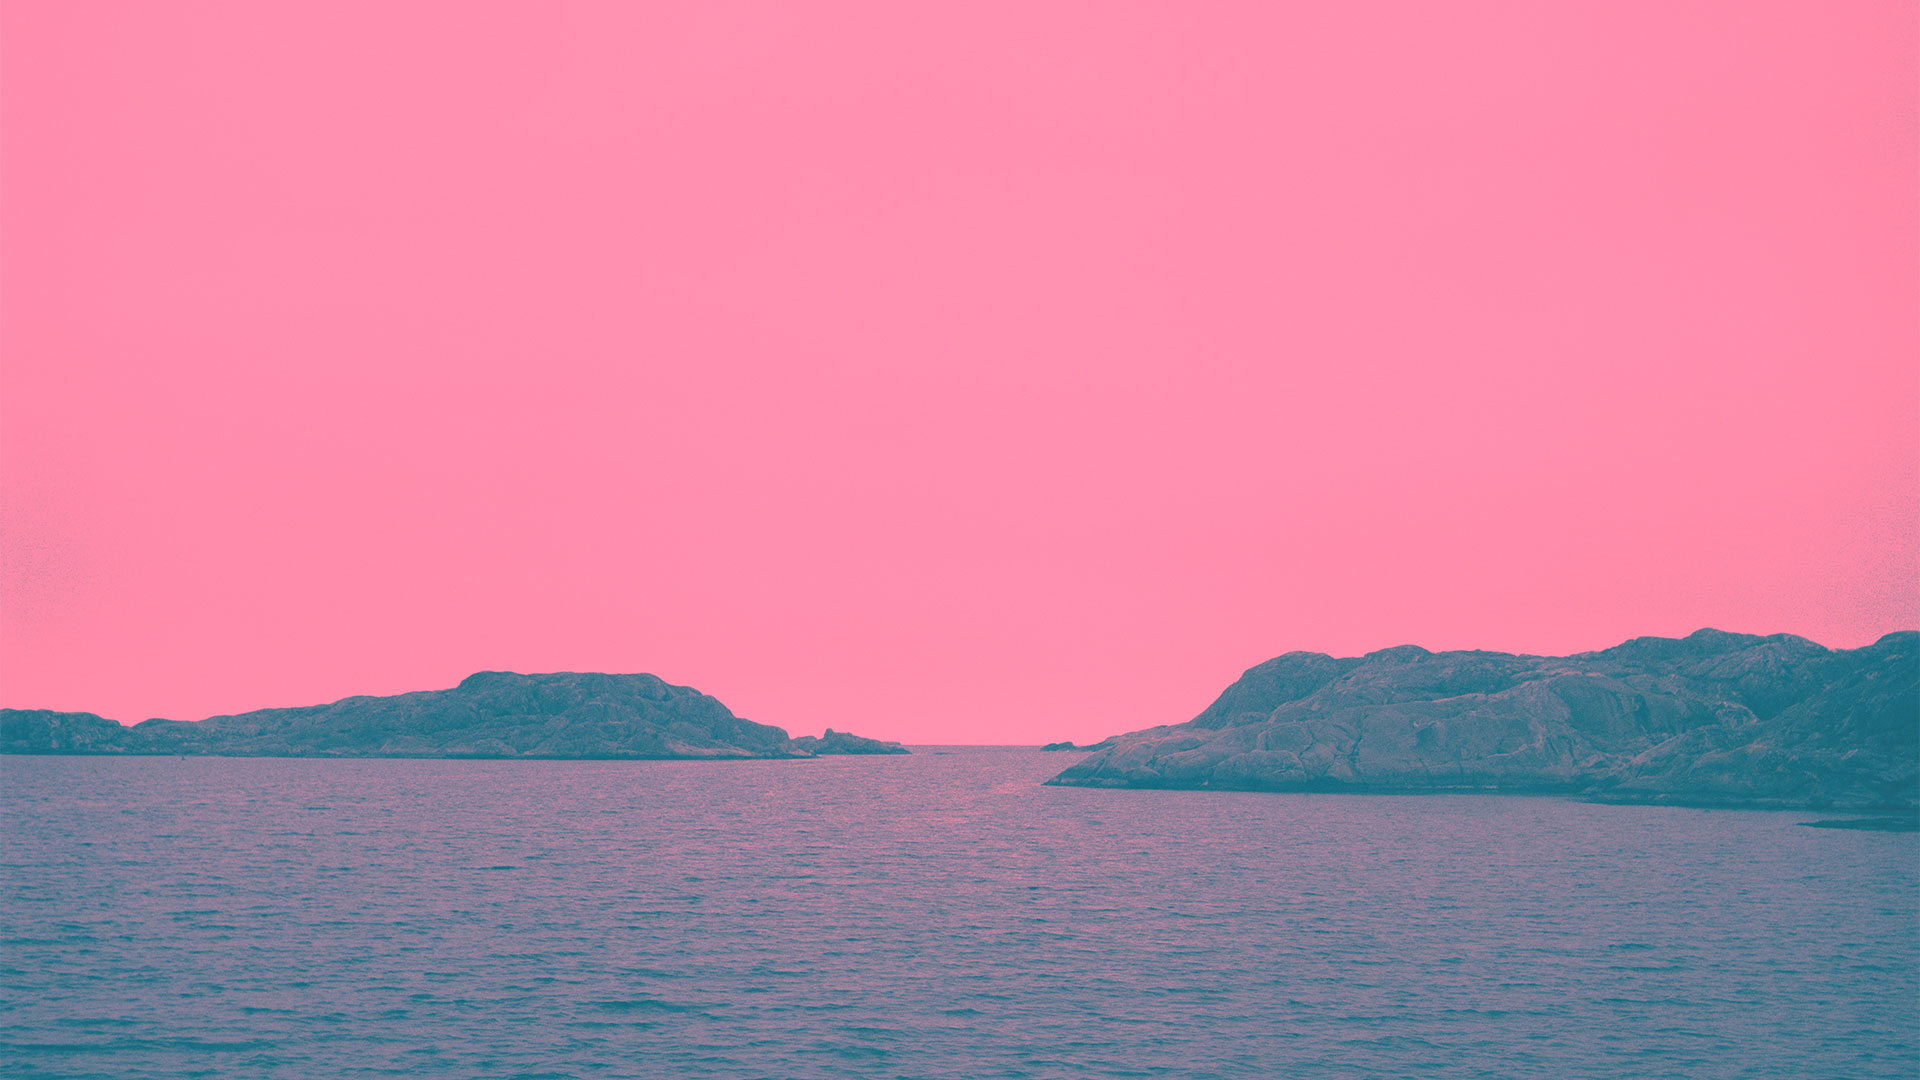 foto av horisont mot hav med manipulerade färger till rosa himmel och lila hav